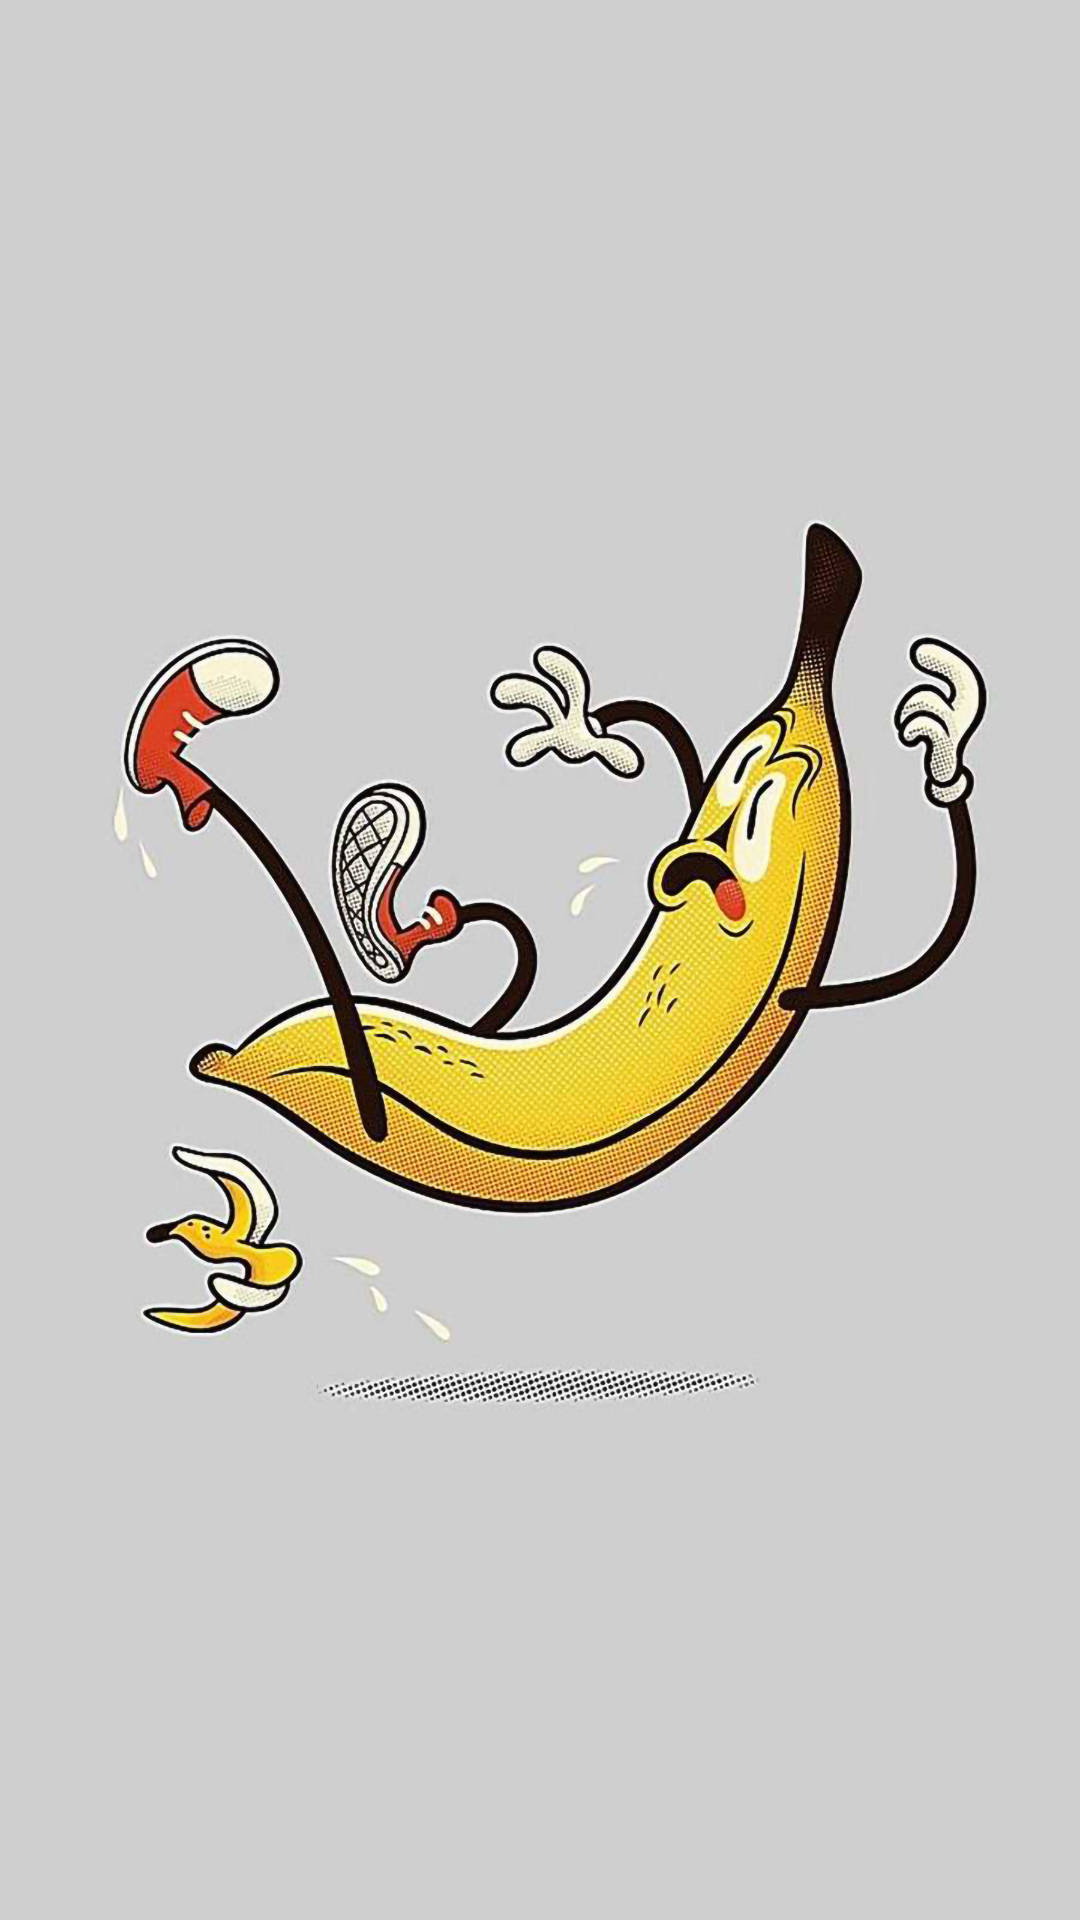 Funny Aesthetic Banana Split Wallpaper